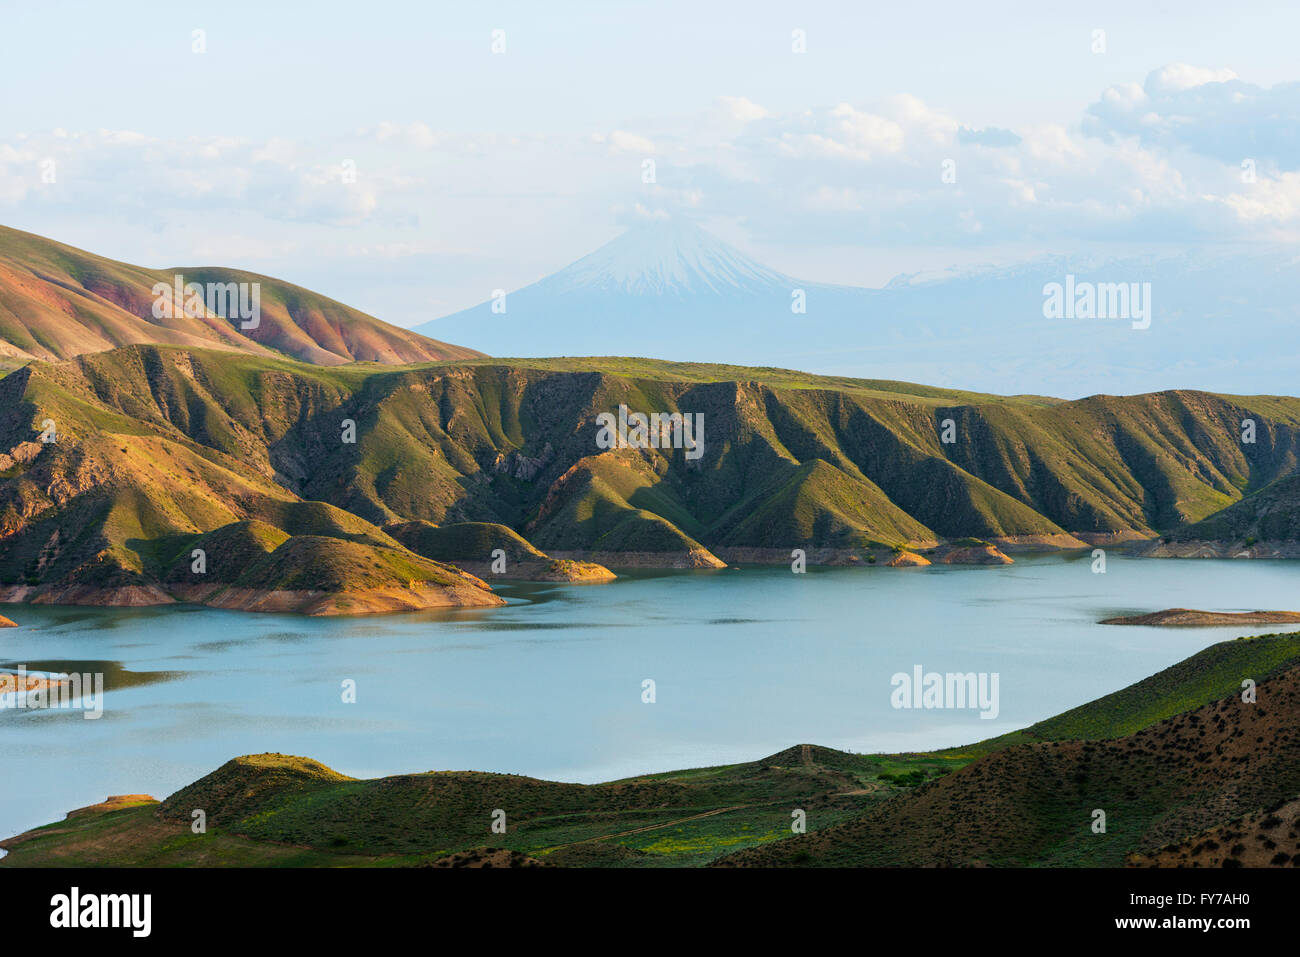 Eurasia, regione del Caucaso, Armenia, Minor Ararat (3925m.) nei pressi del Monte Ararat in Turchia fotografata da Armenia Foto Stock